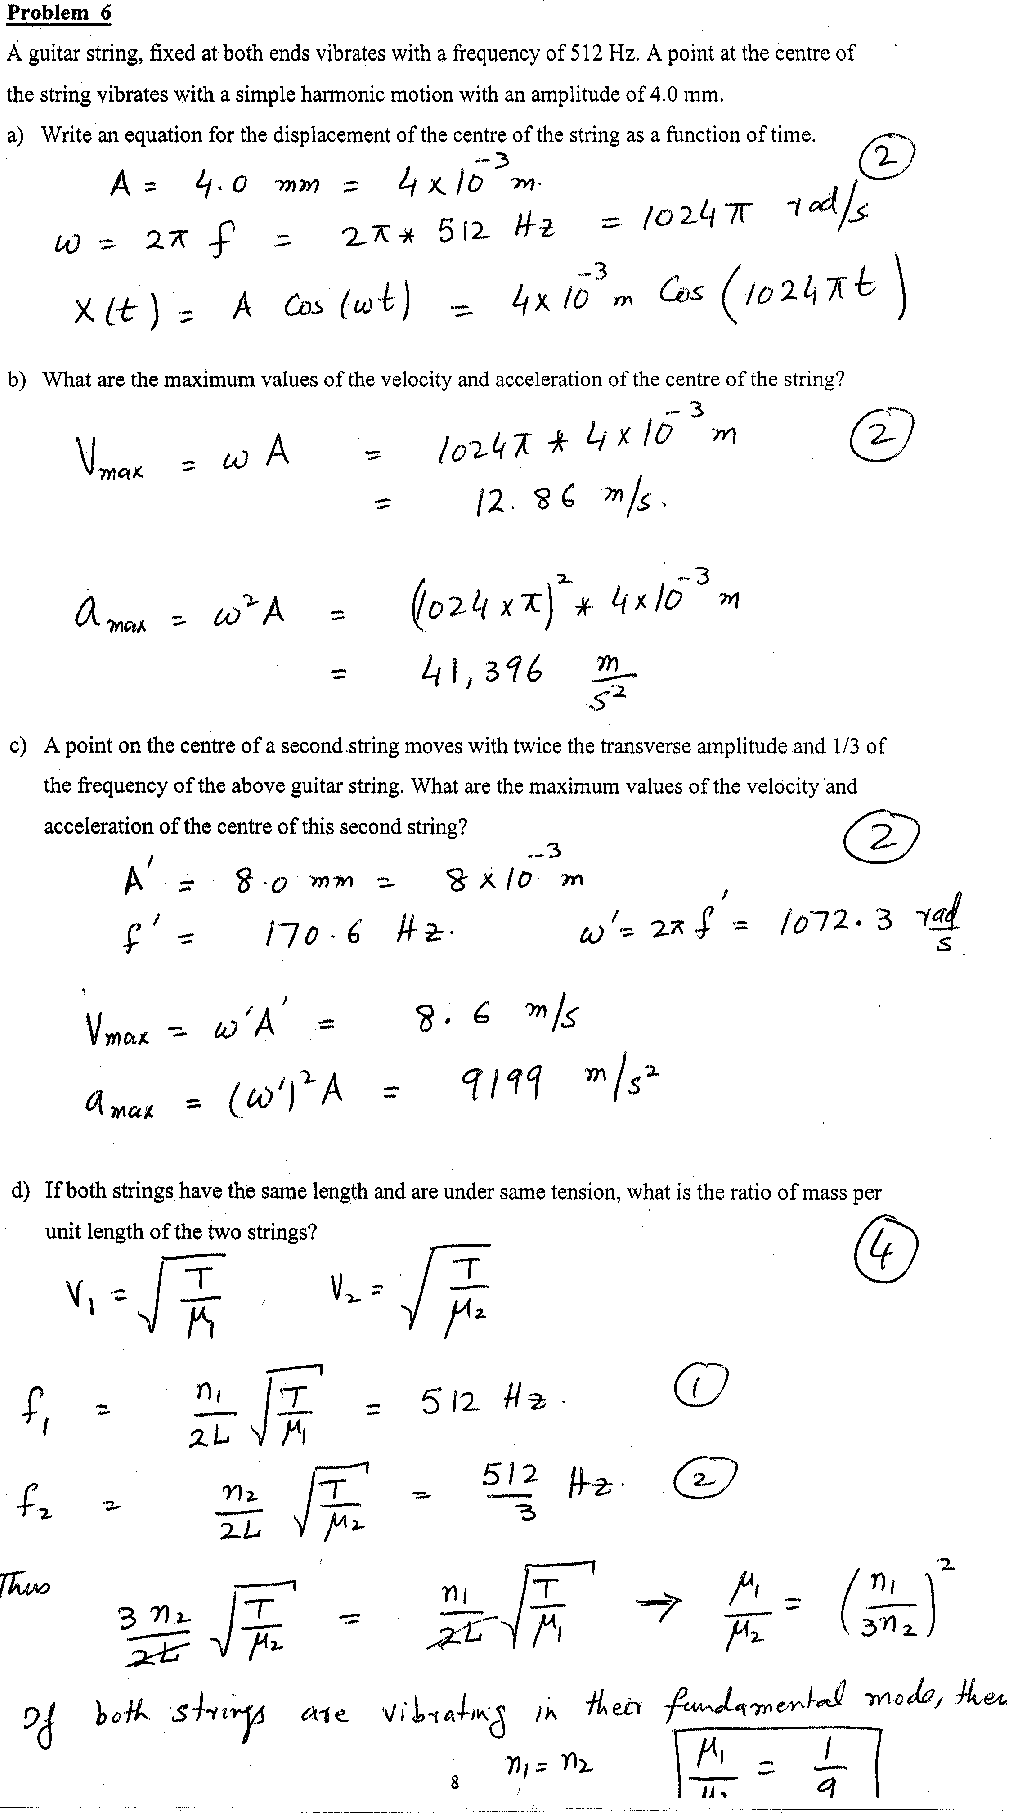 physics 101 exams